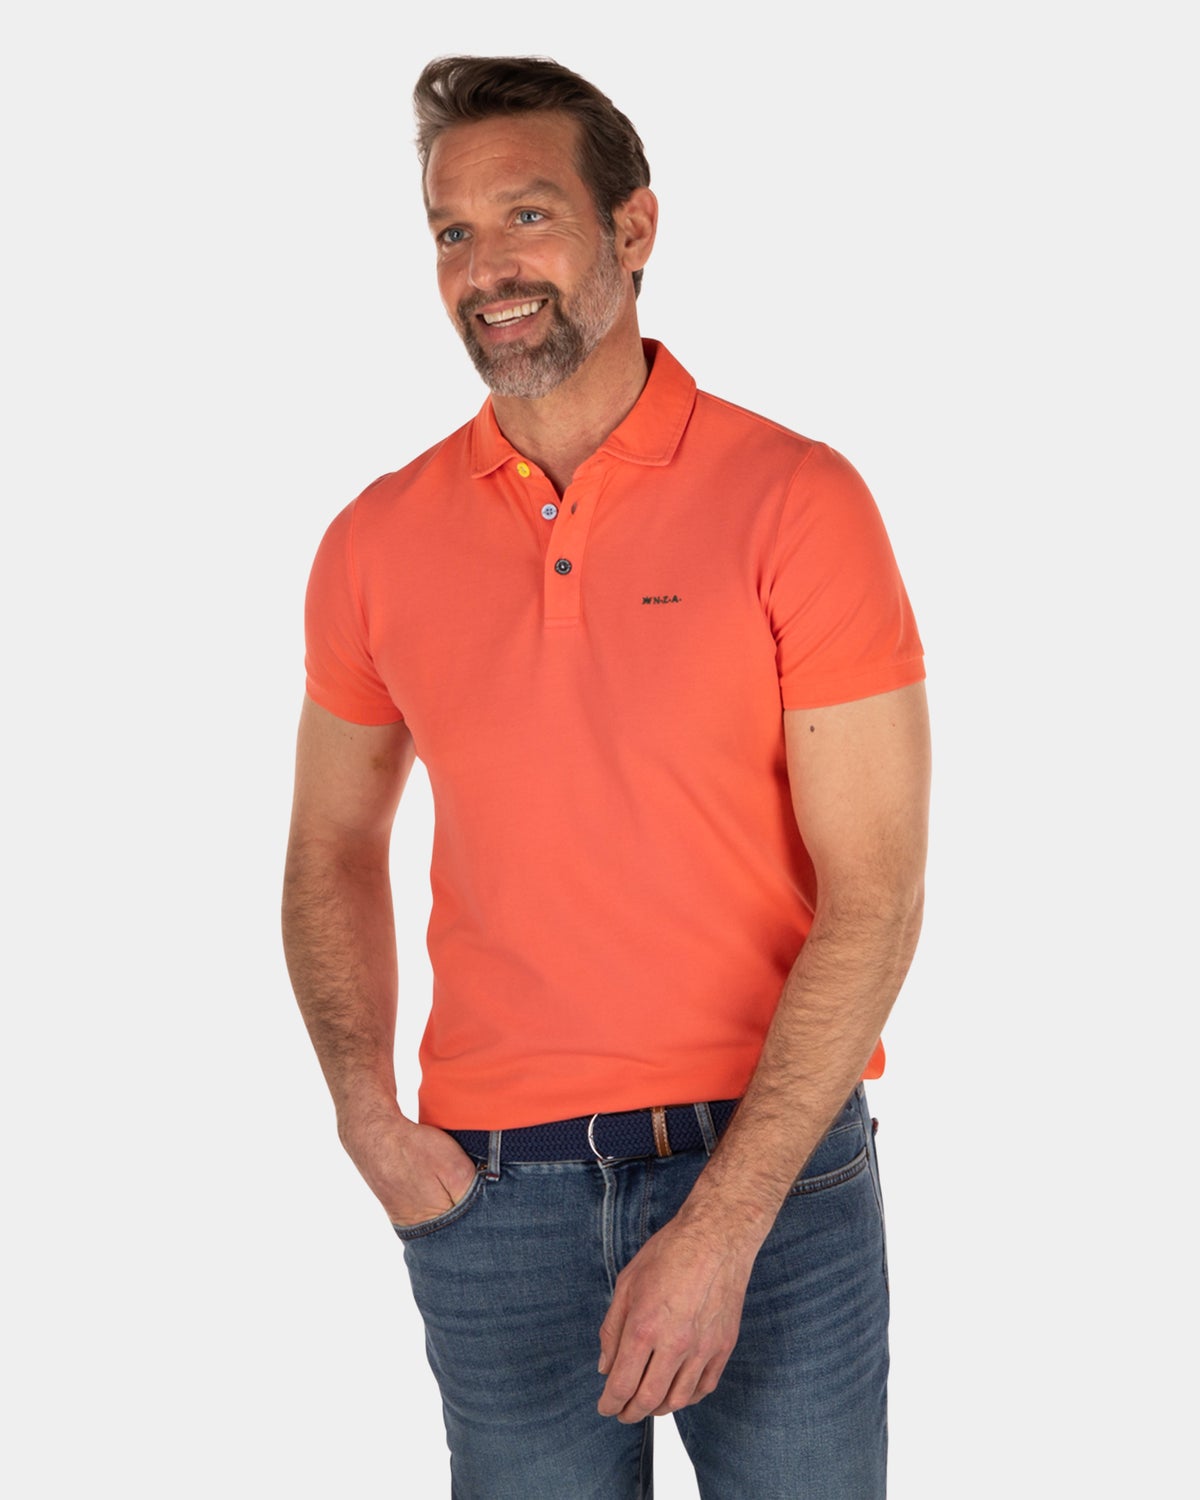 NZA Heritage polo shirt - Burned Orange